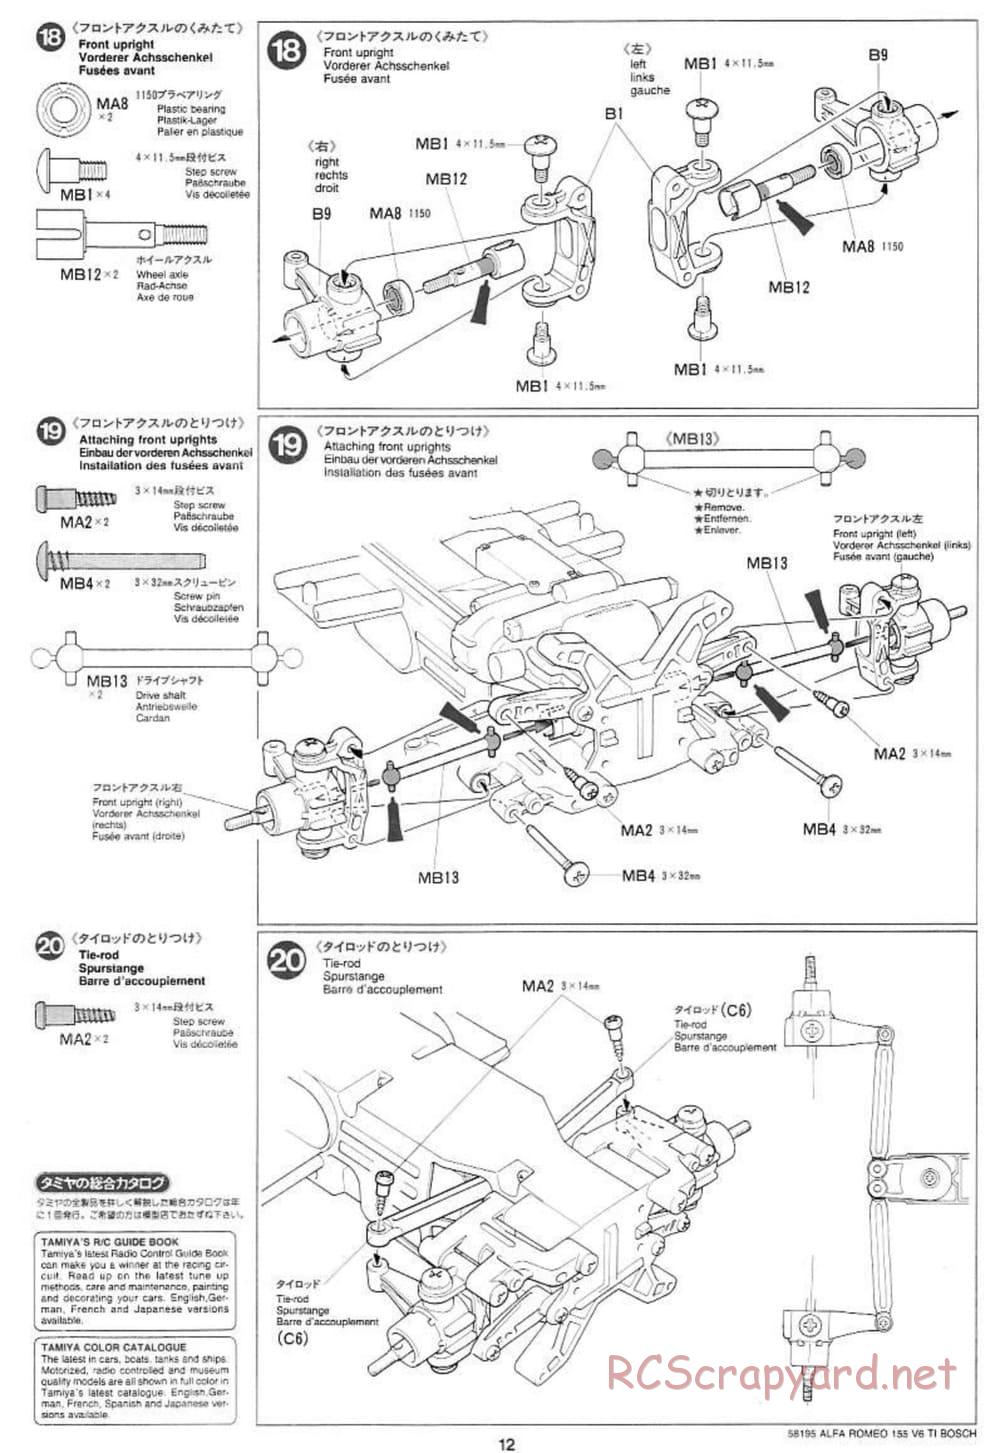 Tamiya - Alfa Romeo 155 V6 TI BOSCH - TL-01 Chassis - Manual - Page 12